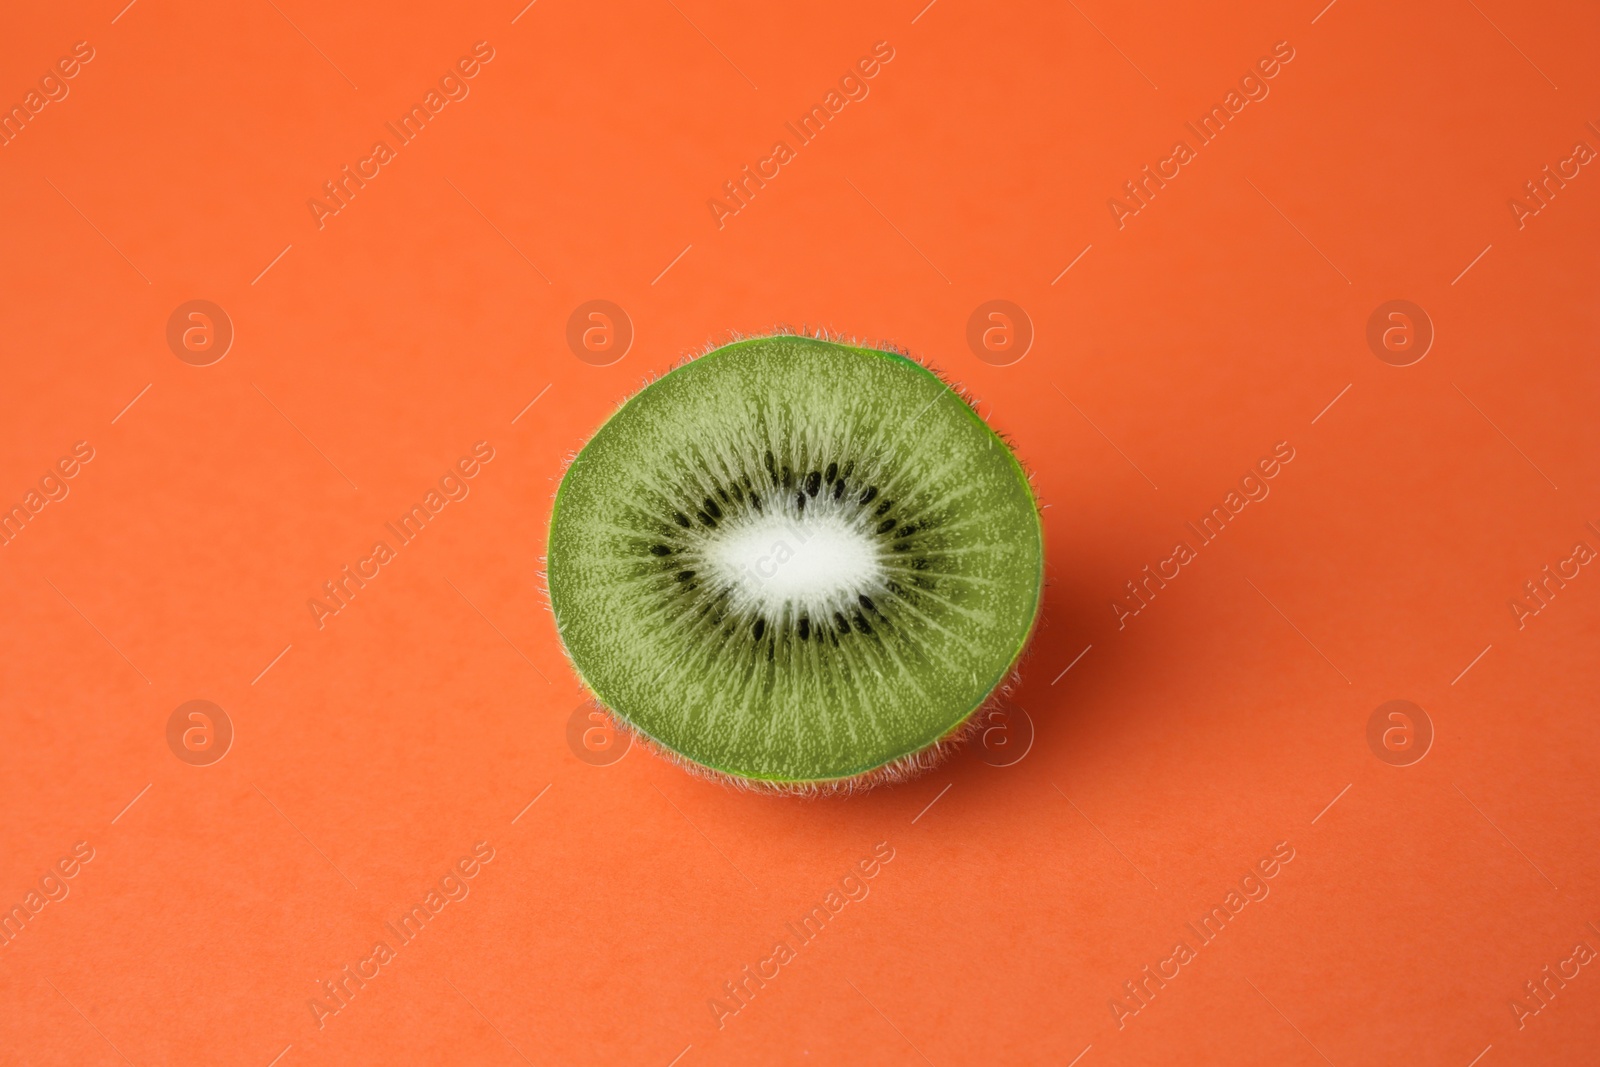 Photo of Cut fresh ripe kiwi on orange background